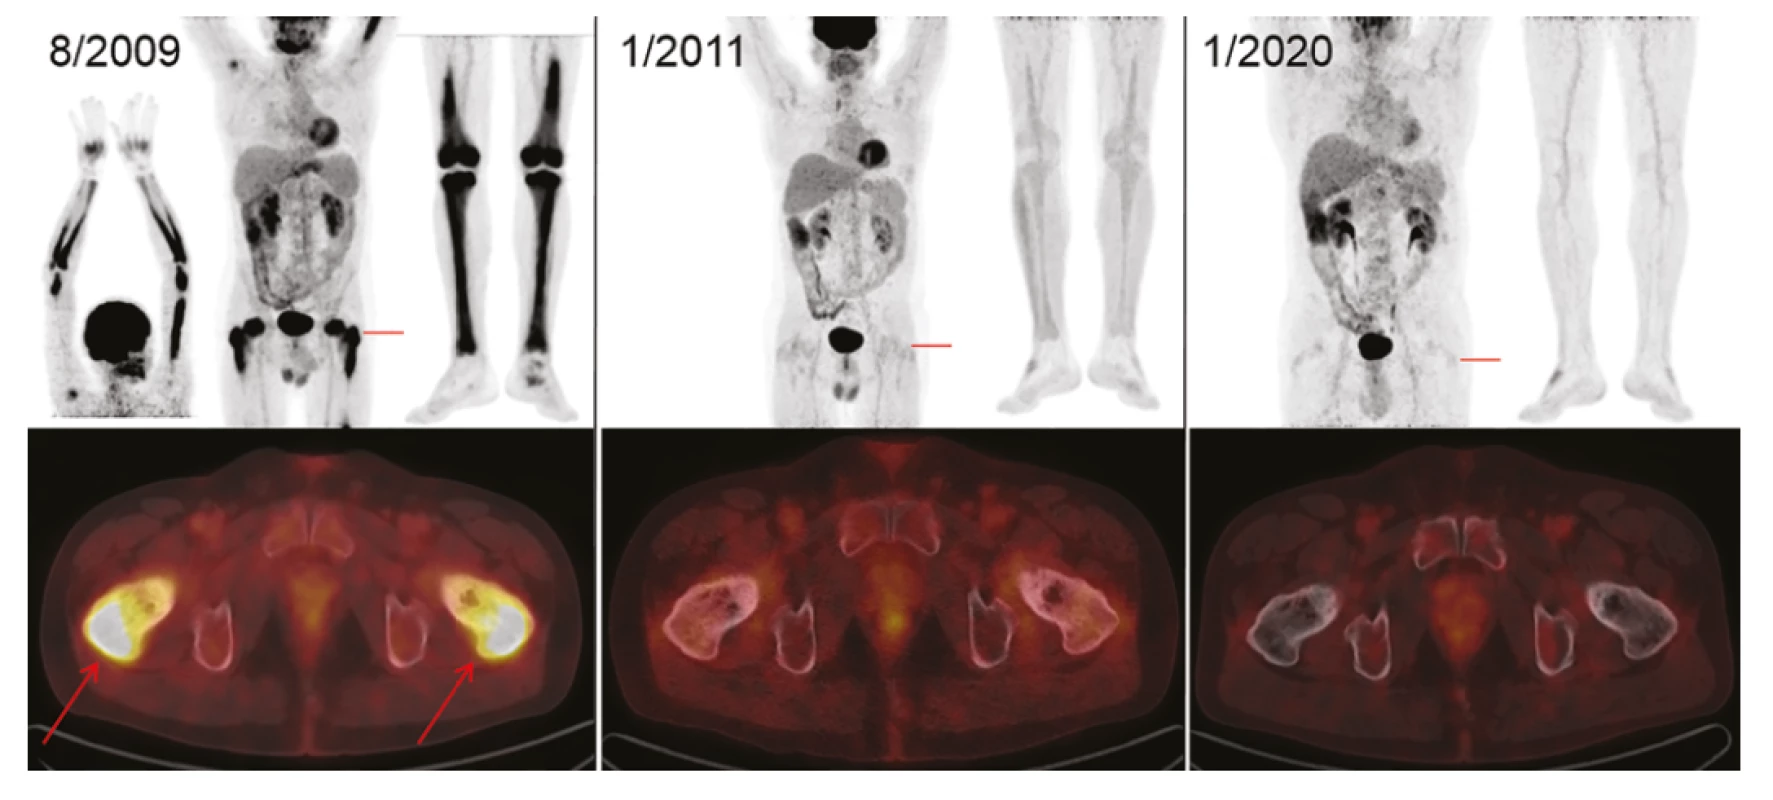 Zobrazení nemoci pomocí FDG-PET/CT vyšetření: Vlevo iniciální sken s MIP projekcí trupu, horních i dolních končetin (v černobílé barevné škále).
Červeně označené místo axiálního fúzovaného řezu (v barevné škále Hot Body) s maximem FDG-avidního postižení proximálních stehenních kostí (šipky)
v korelaci se skleroticko-lytickou strukturou kosti. Uprostřed obraz svědčící pro remisi – vymizení patologických akumulací FDG ve skeletu horních i dolních
končetin. Tento stav trvá i po 9 letech, což dokumentují identické obrázky vpravo. Akumulace FDG v mozku, ledvinách, močovém měchýři je fyziologická.
Akumulace v myokardu, ve vzestupném tračníku v rámci variant fyziologického zobrazení